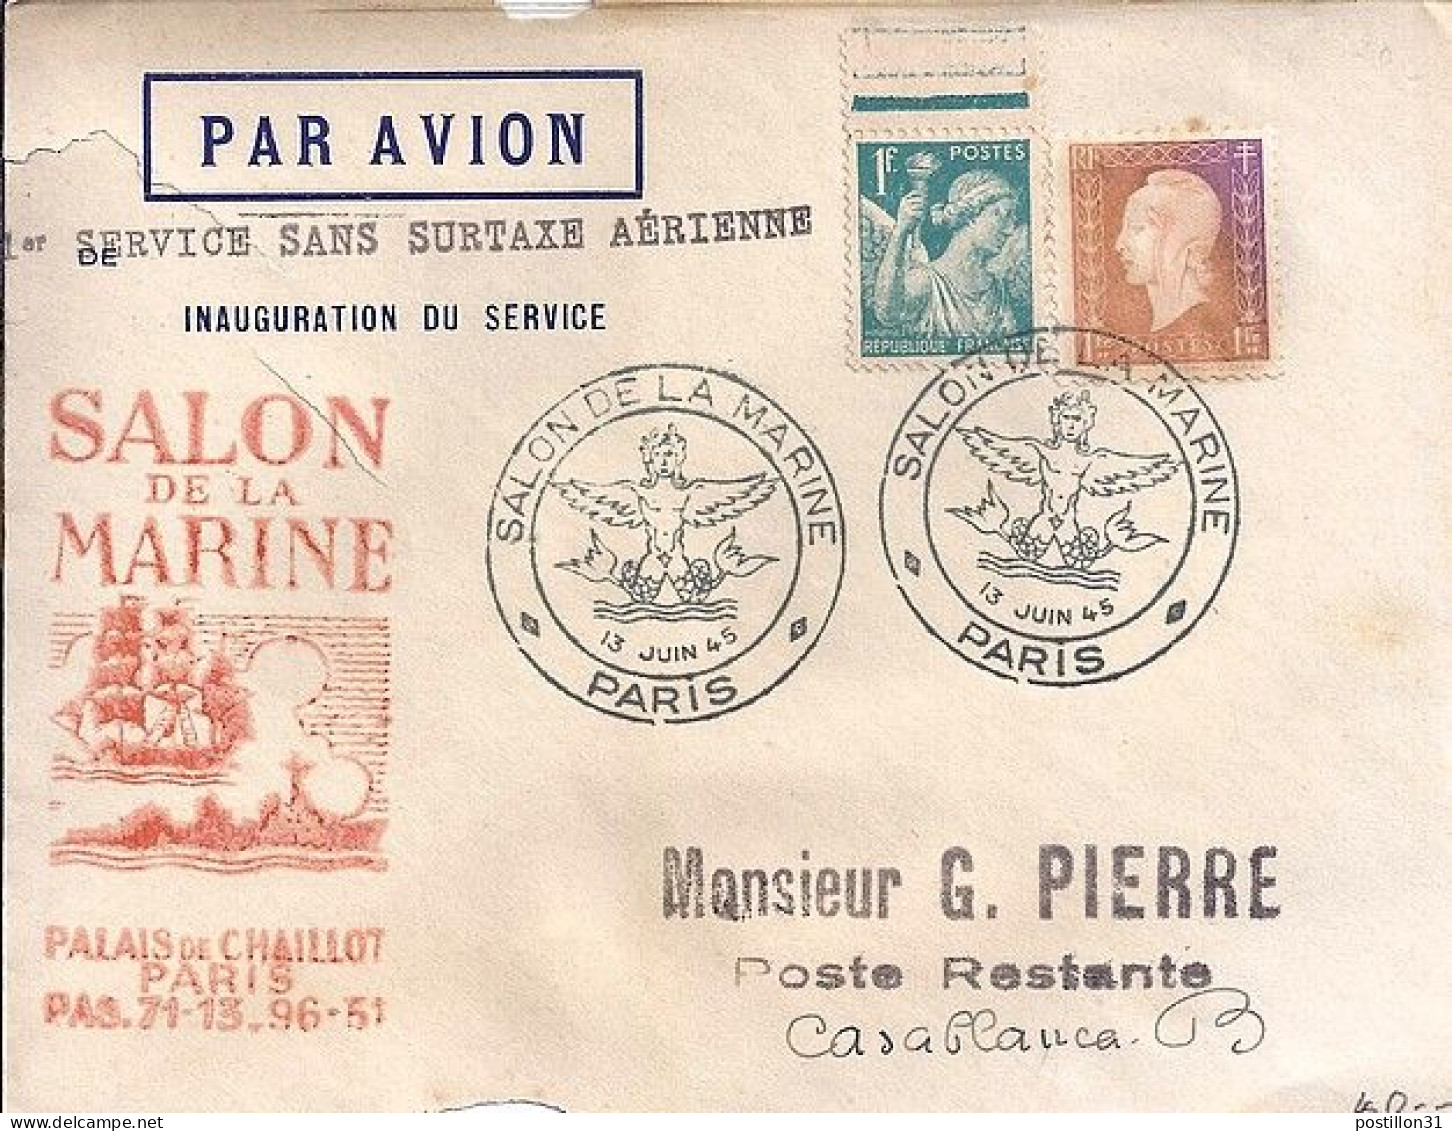 IRIS N° 650/689 S/L. DE PARIS/SALON DE LA MARINE/13.6.45 - 1939-44 Iris